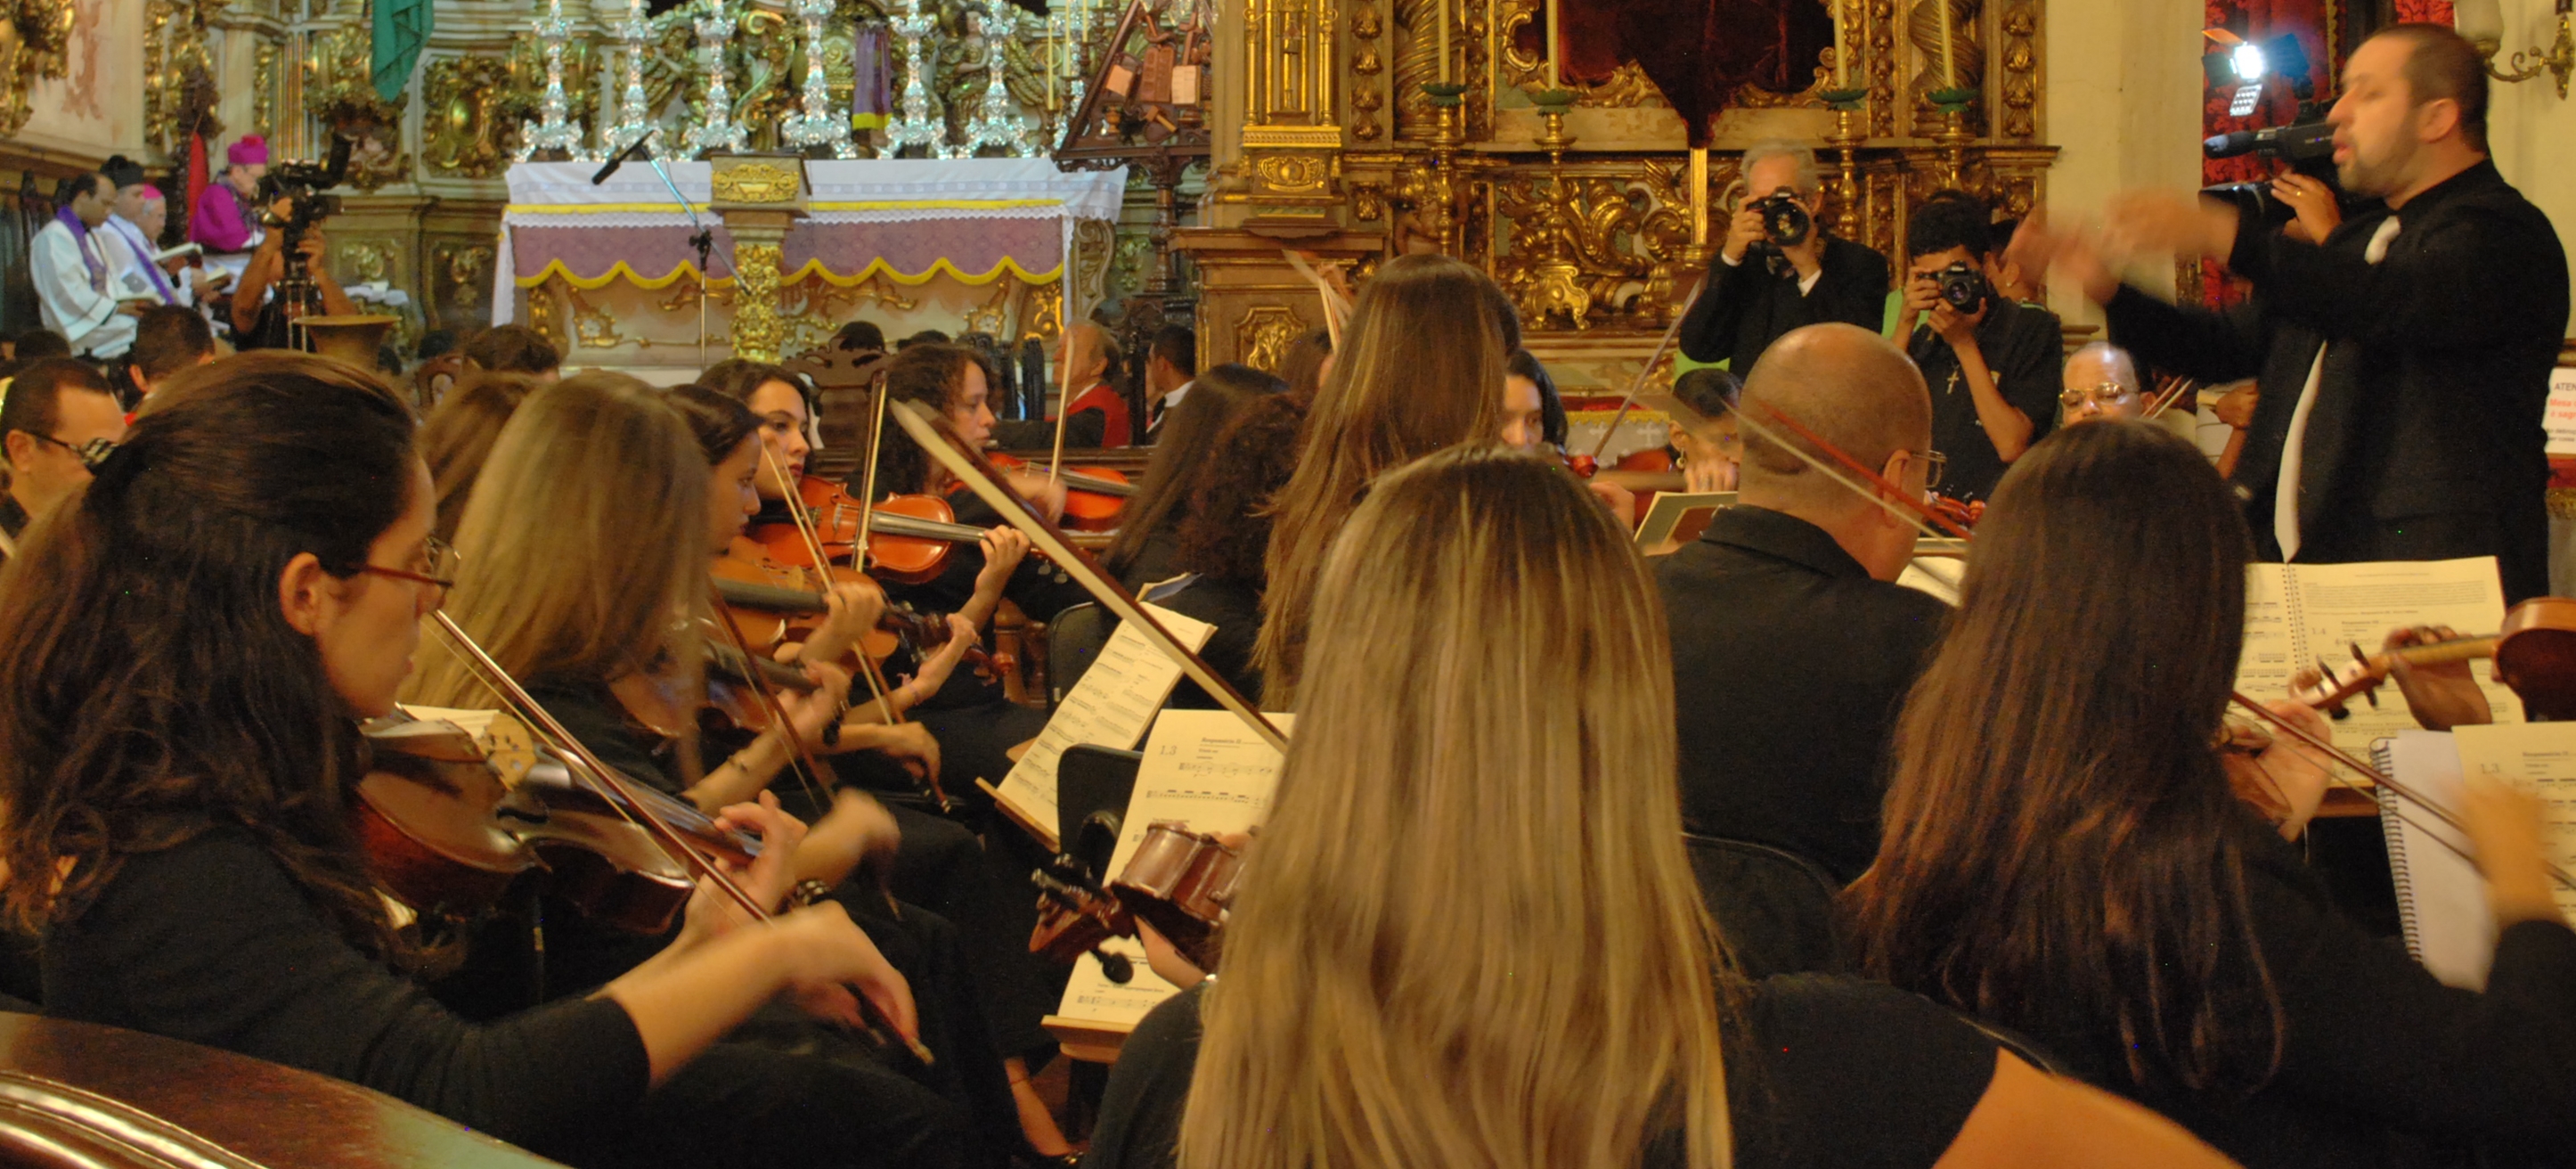 Orquestra Ribeiro Bastos participa da celebração, apresentando composições do padre José Maria Xavier - FOTO: Amanda Rodrigues